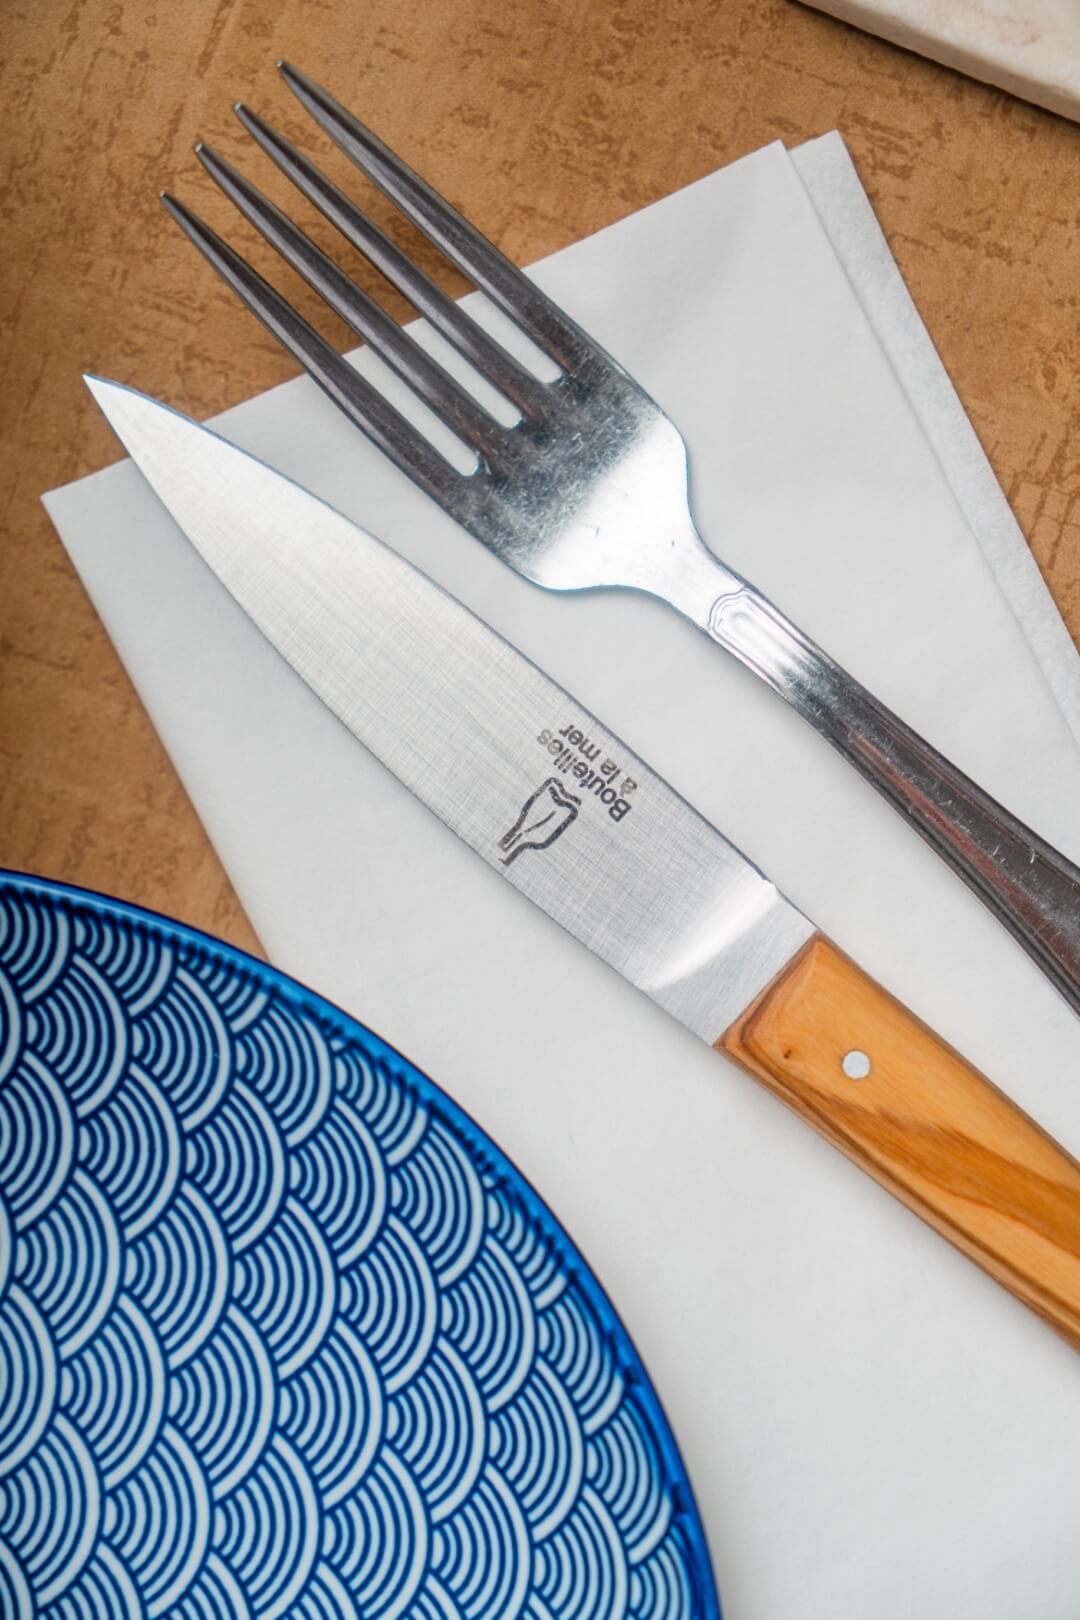 Couteau gravé avec le logo Bouteilles à la mer et fourchette posés sur une serviette à côté d'une assiette.